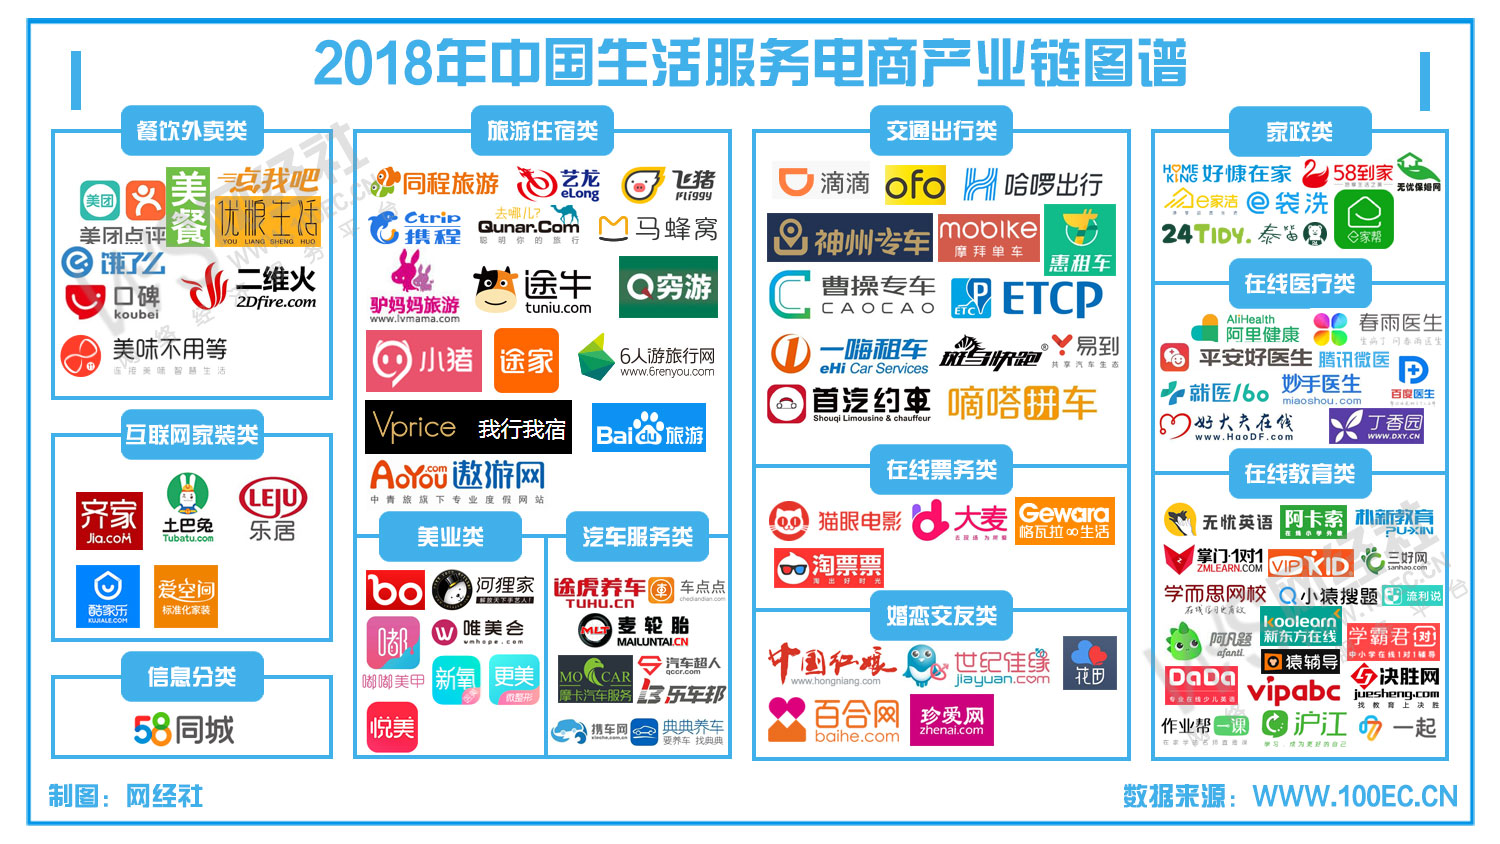 2018年中国生活服务电商产业链图谱(1).jpg